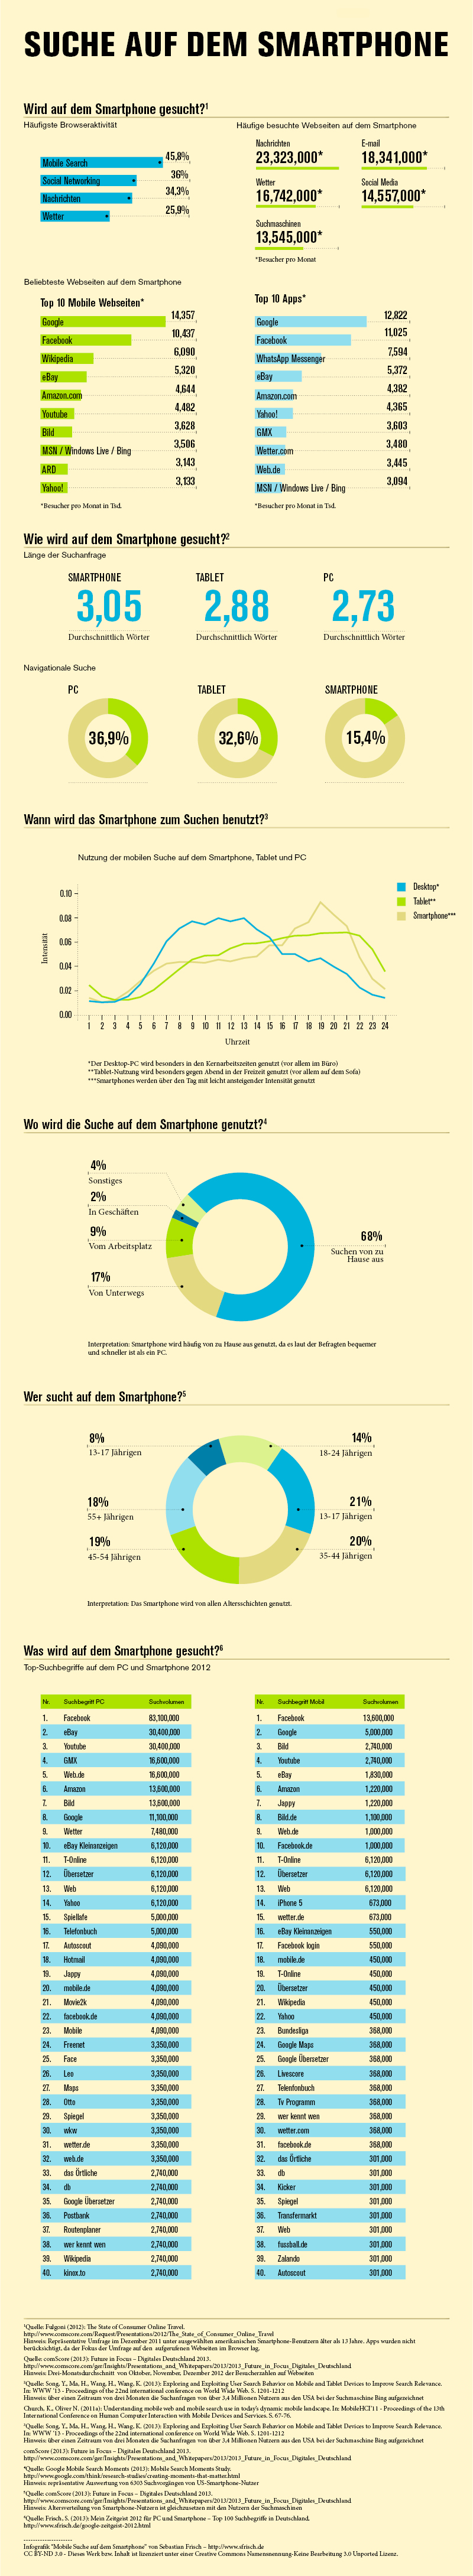 [Infografik] Mobile Suche - So wird auf dem Smartphone gesucht